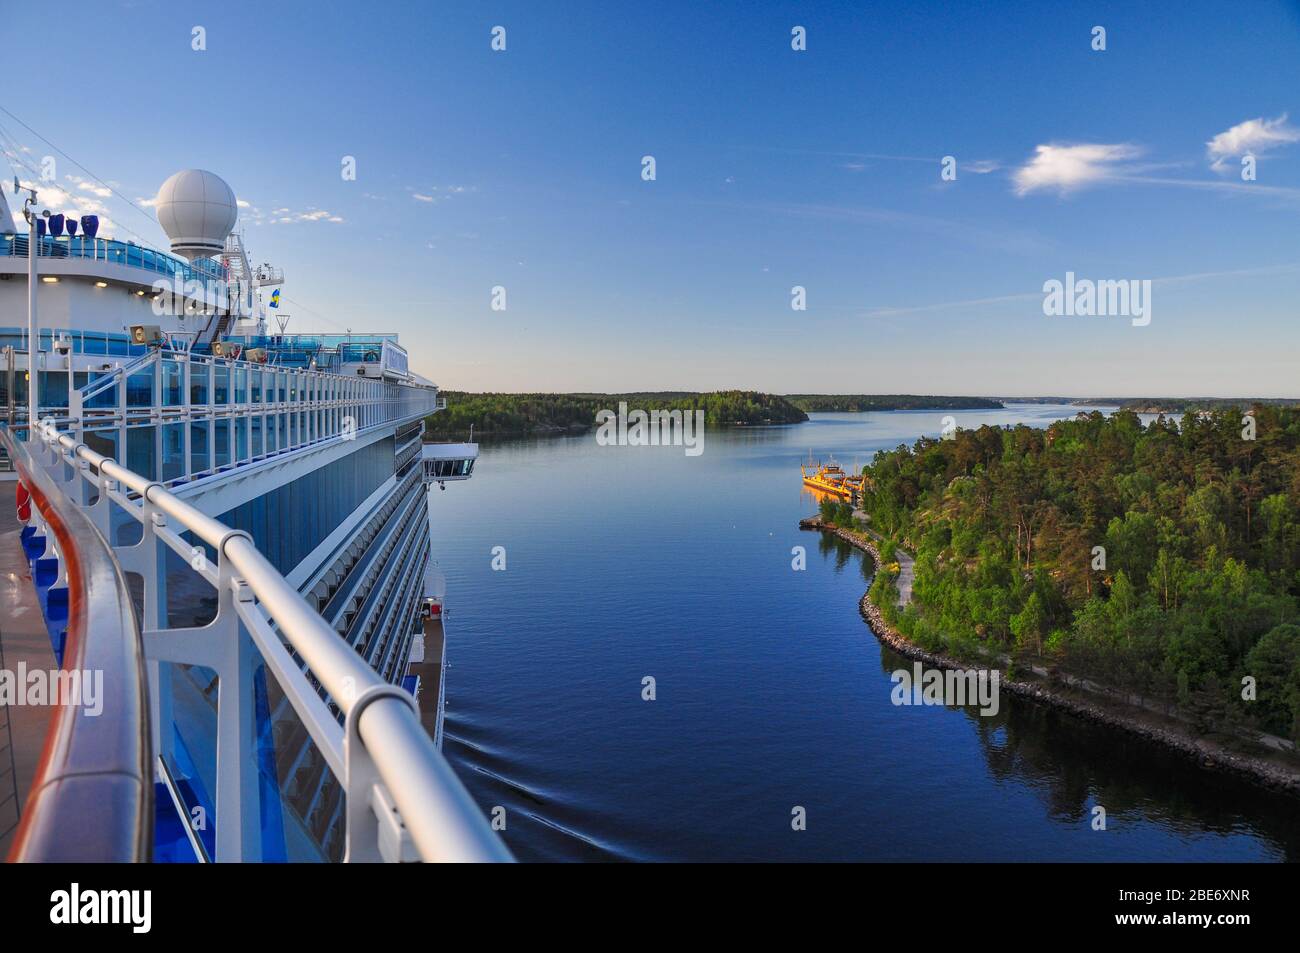 Regal Princess sailing through the Stockholm Archipelago Stock Photo - Alamy